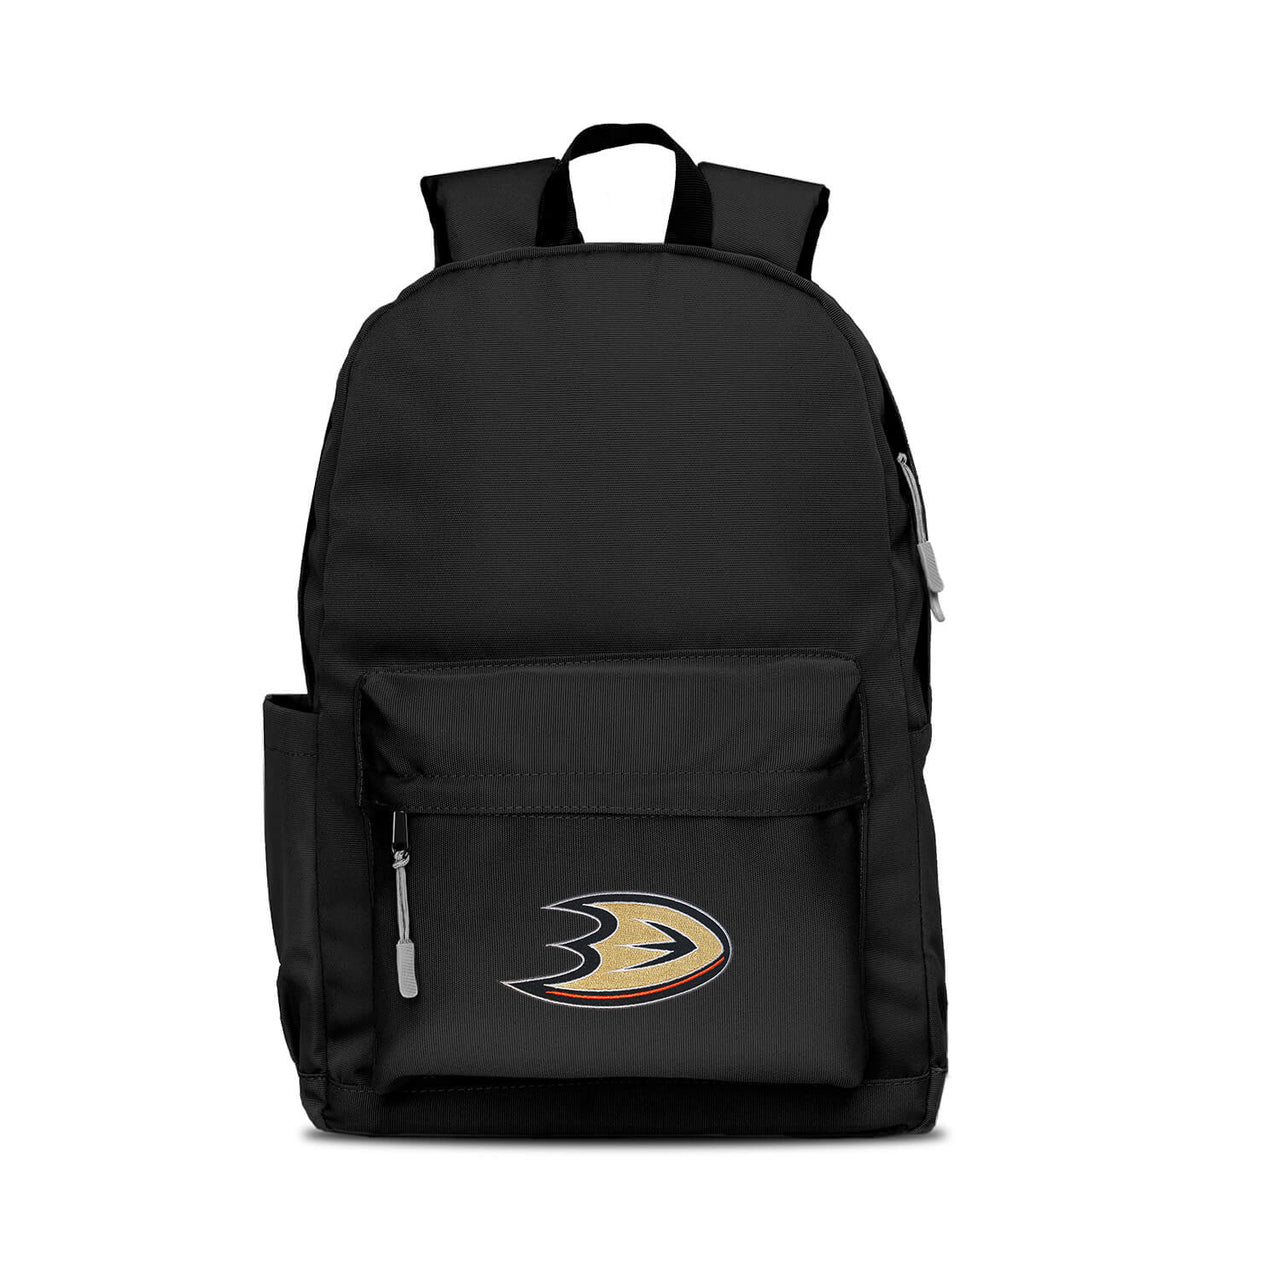 Anaheim Ducks Campus Laptop Backpack- Black